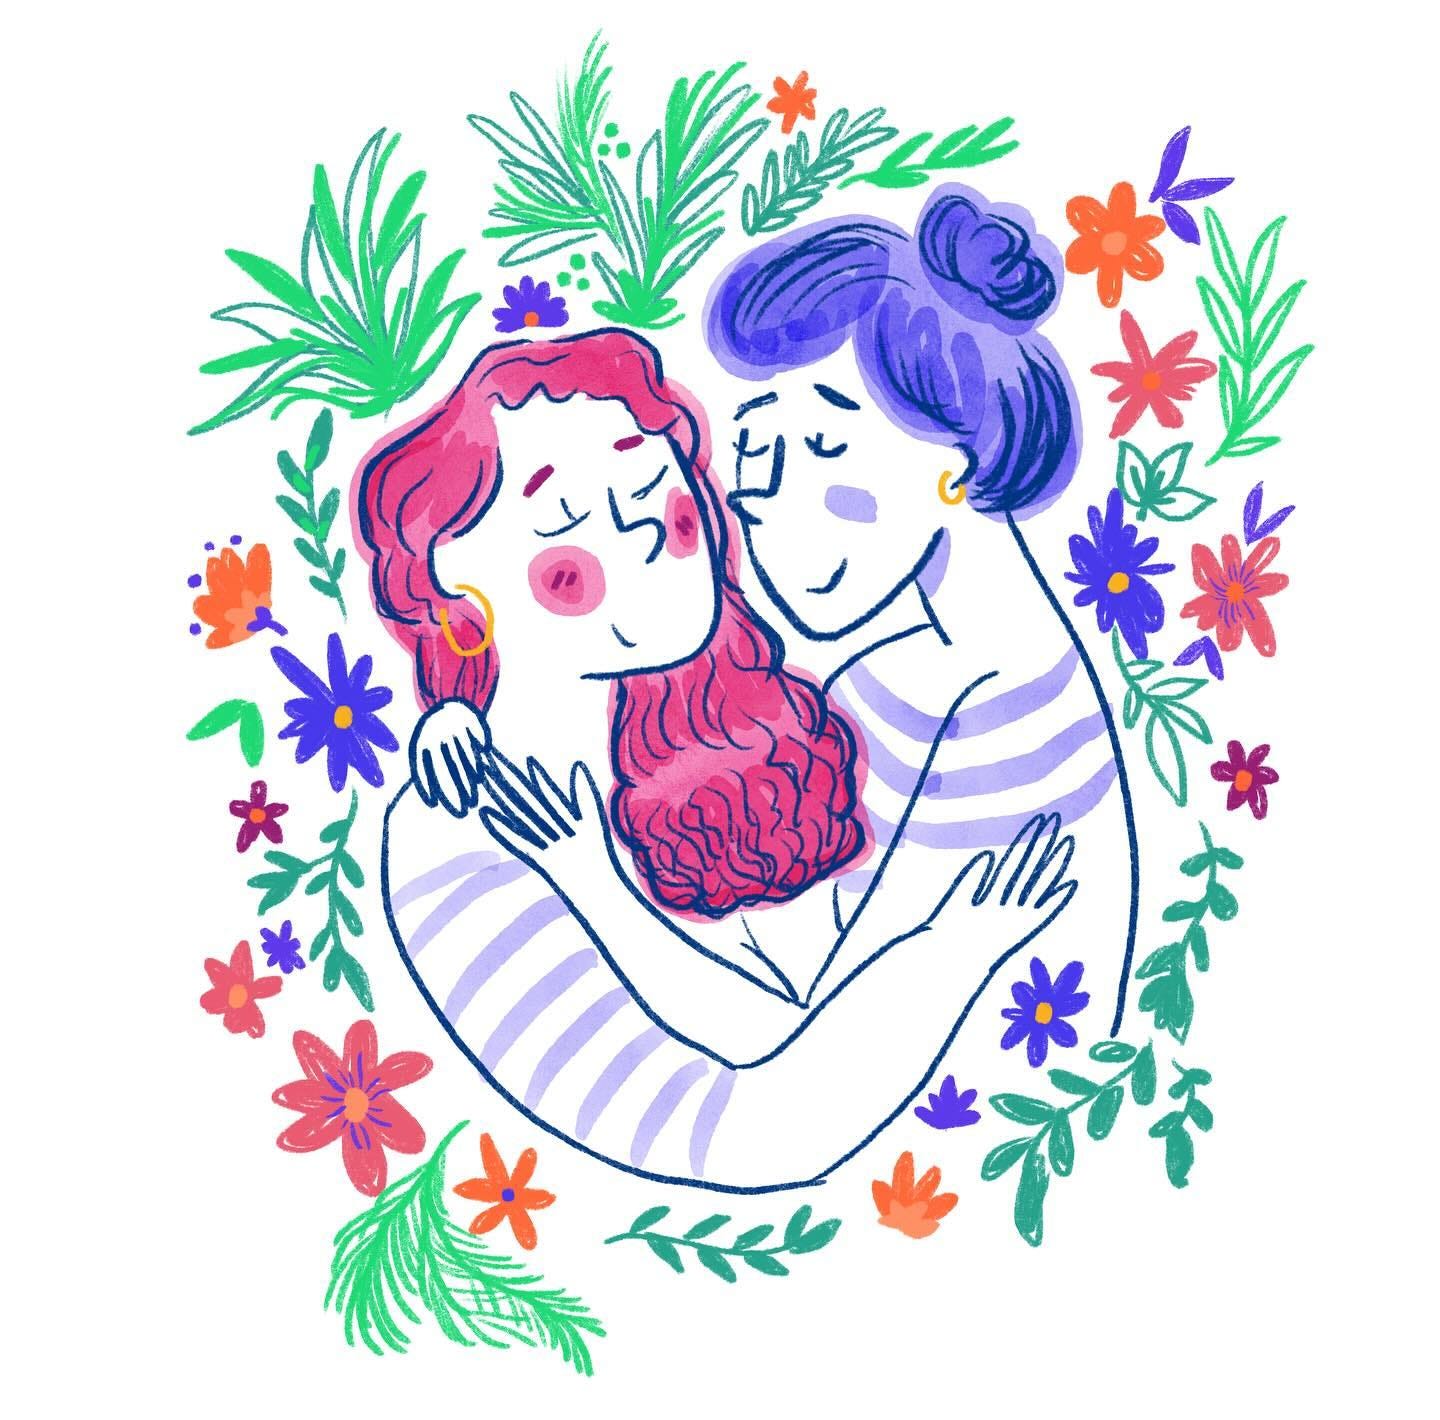 Illustration de deux femmes s'enlaçant, amoureuses, entourées de végétation et fleurs.